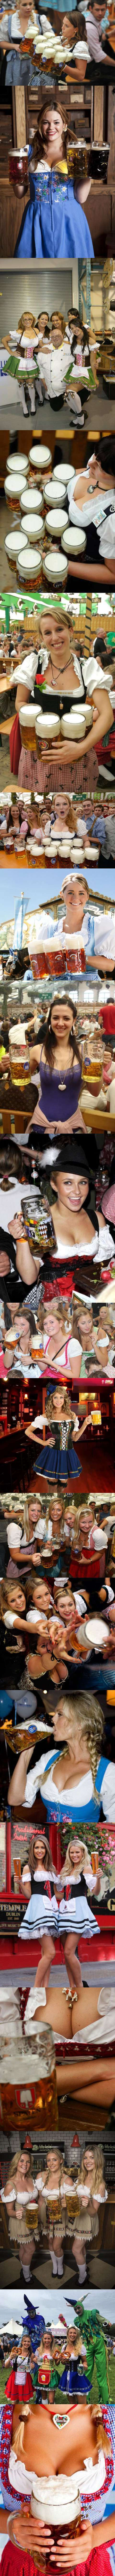 독일의 흔한 맥주집 종업원들